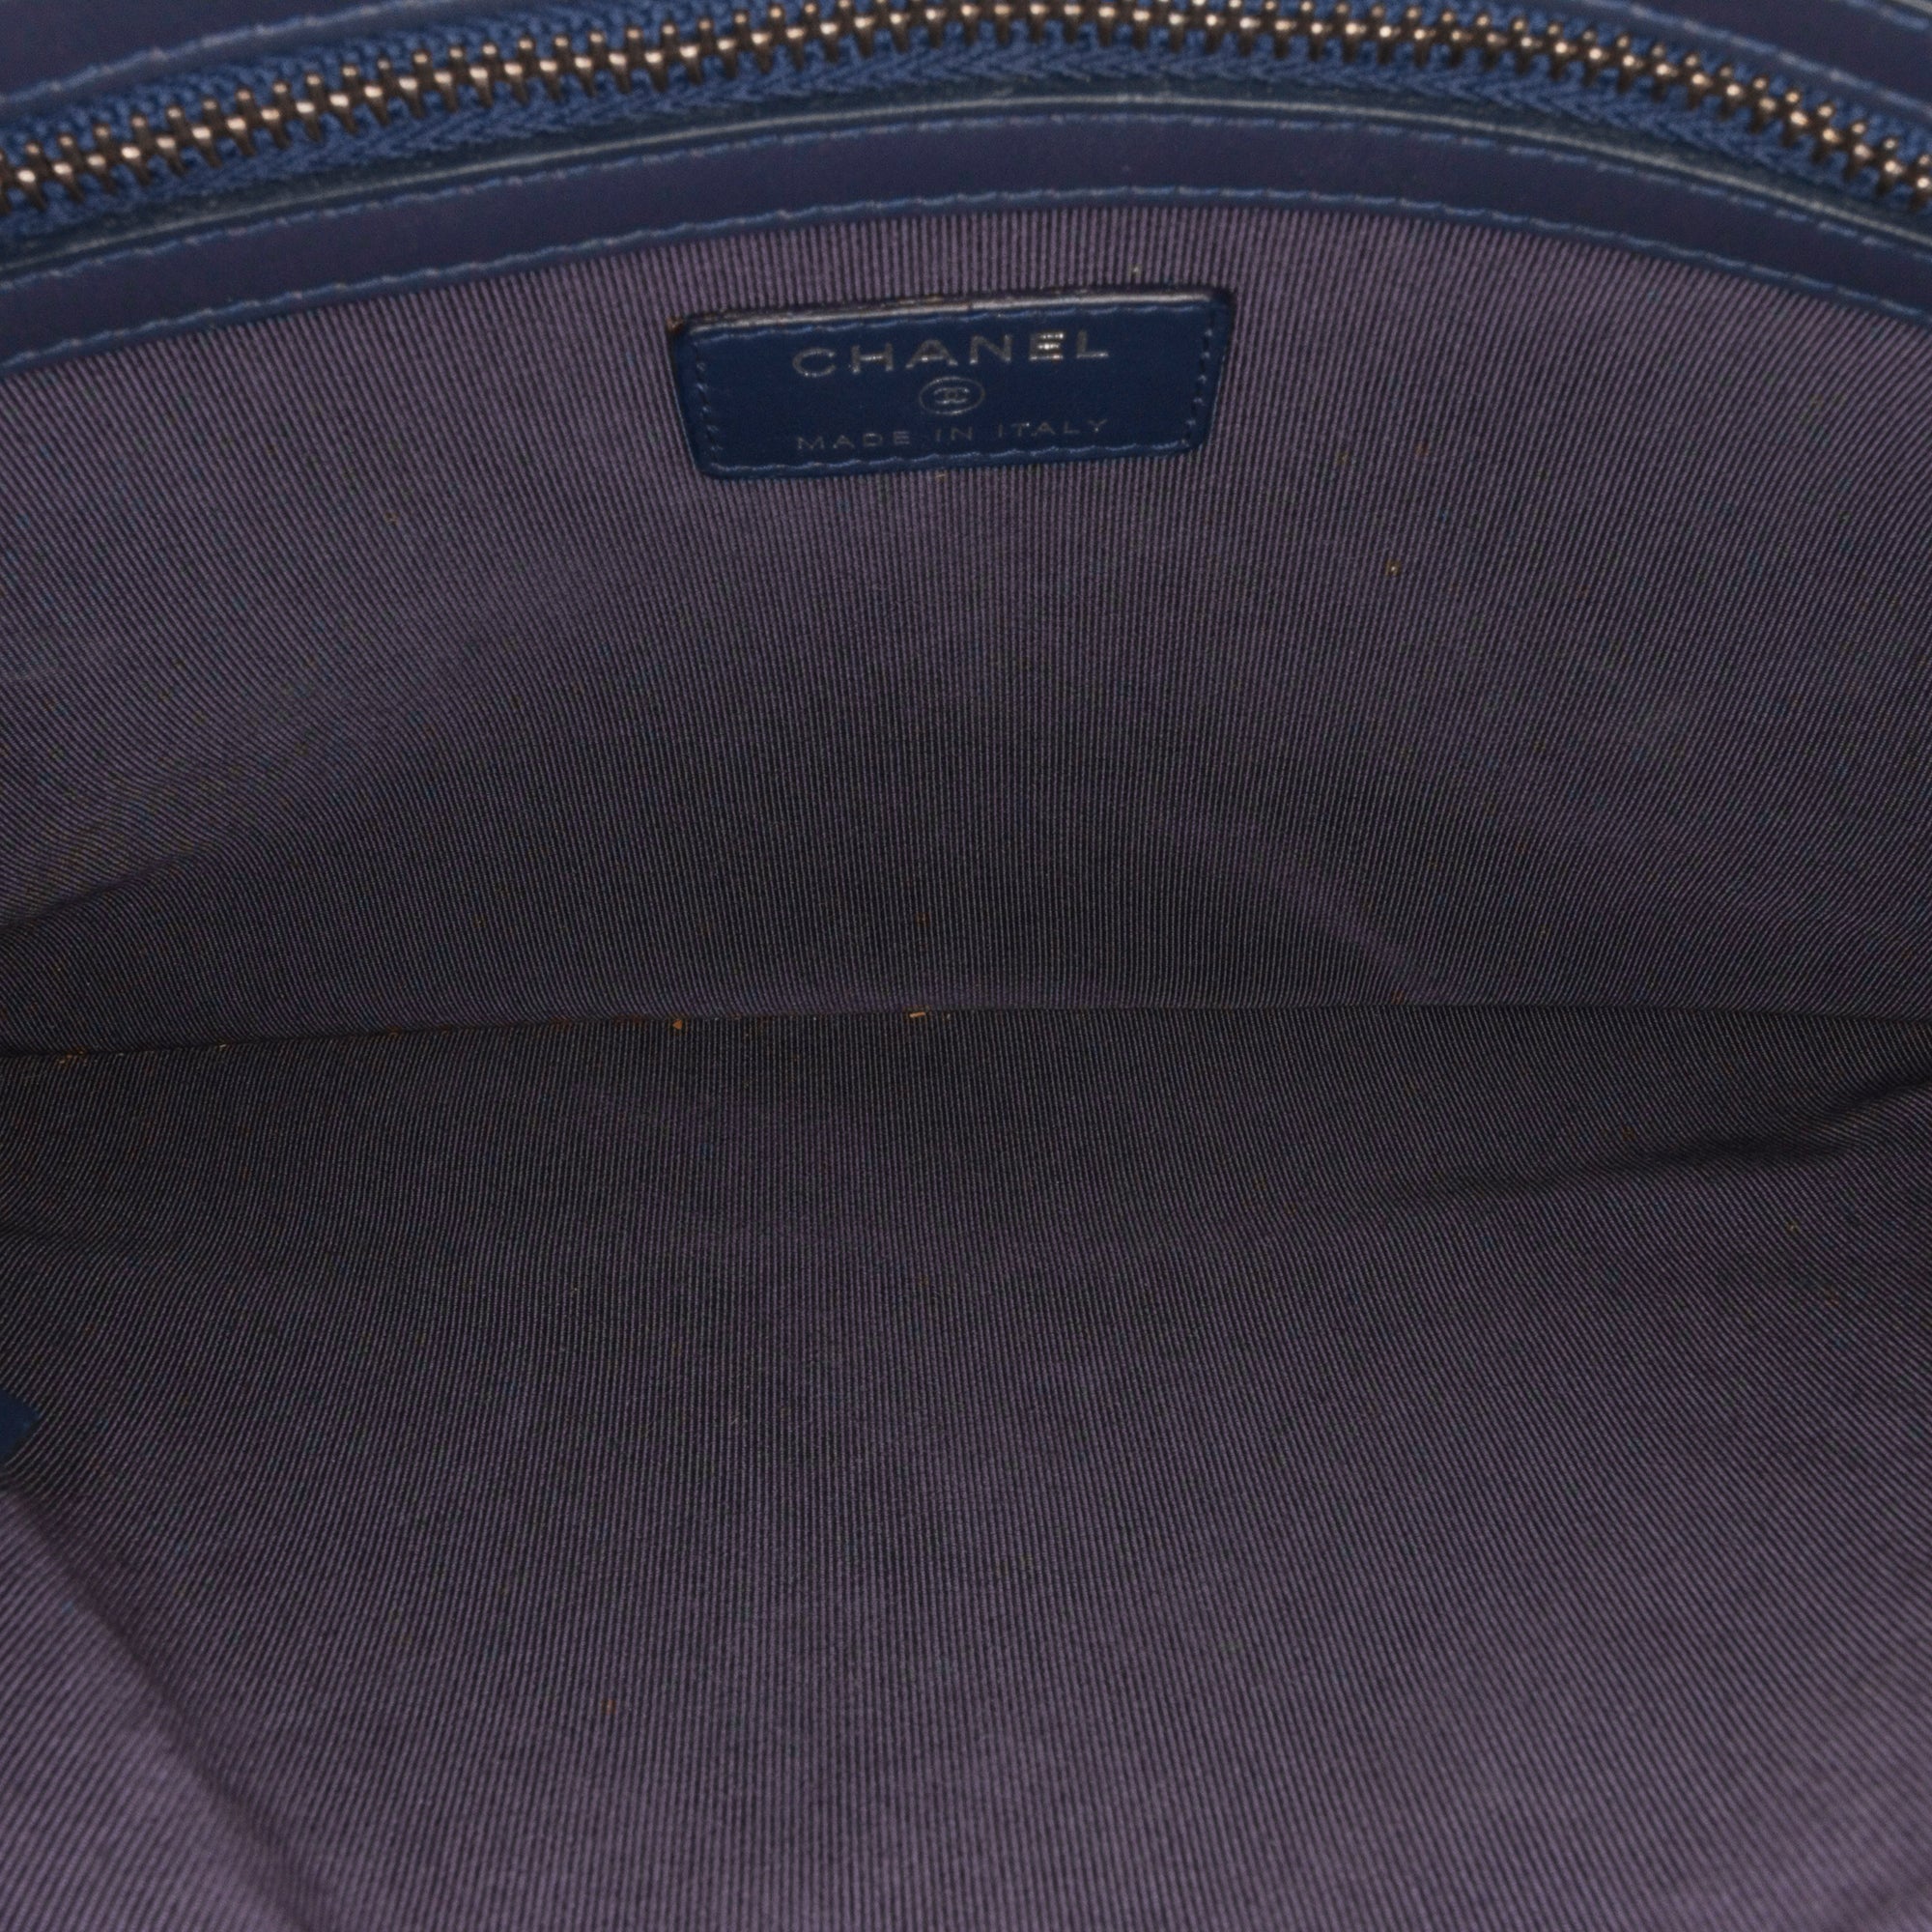 Chanel Blue Gabrielle Clutch Bag Chanel